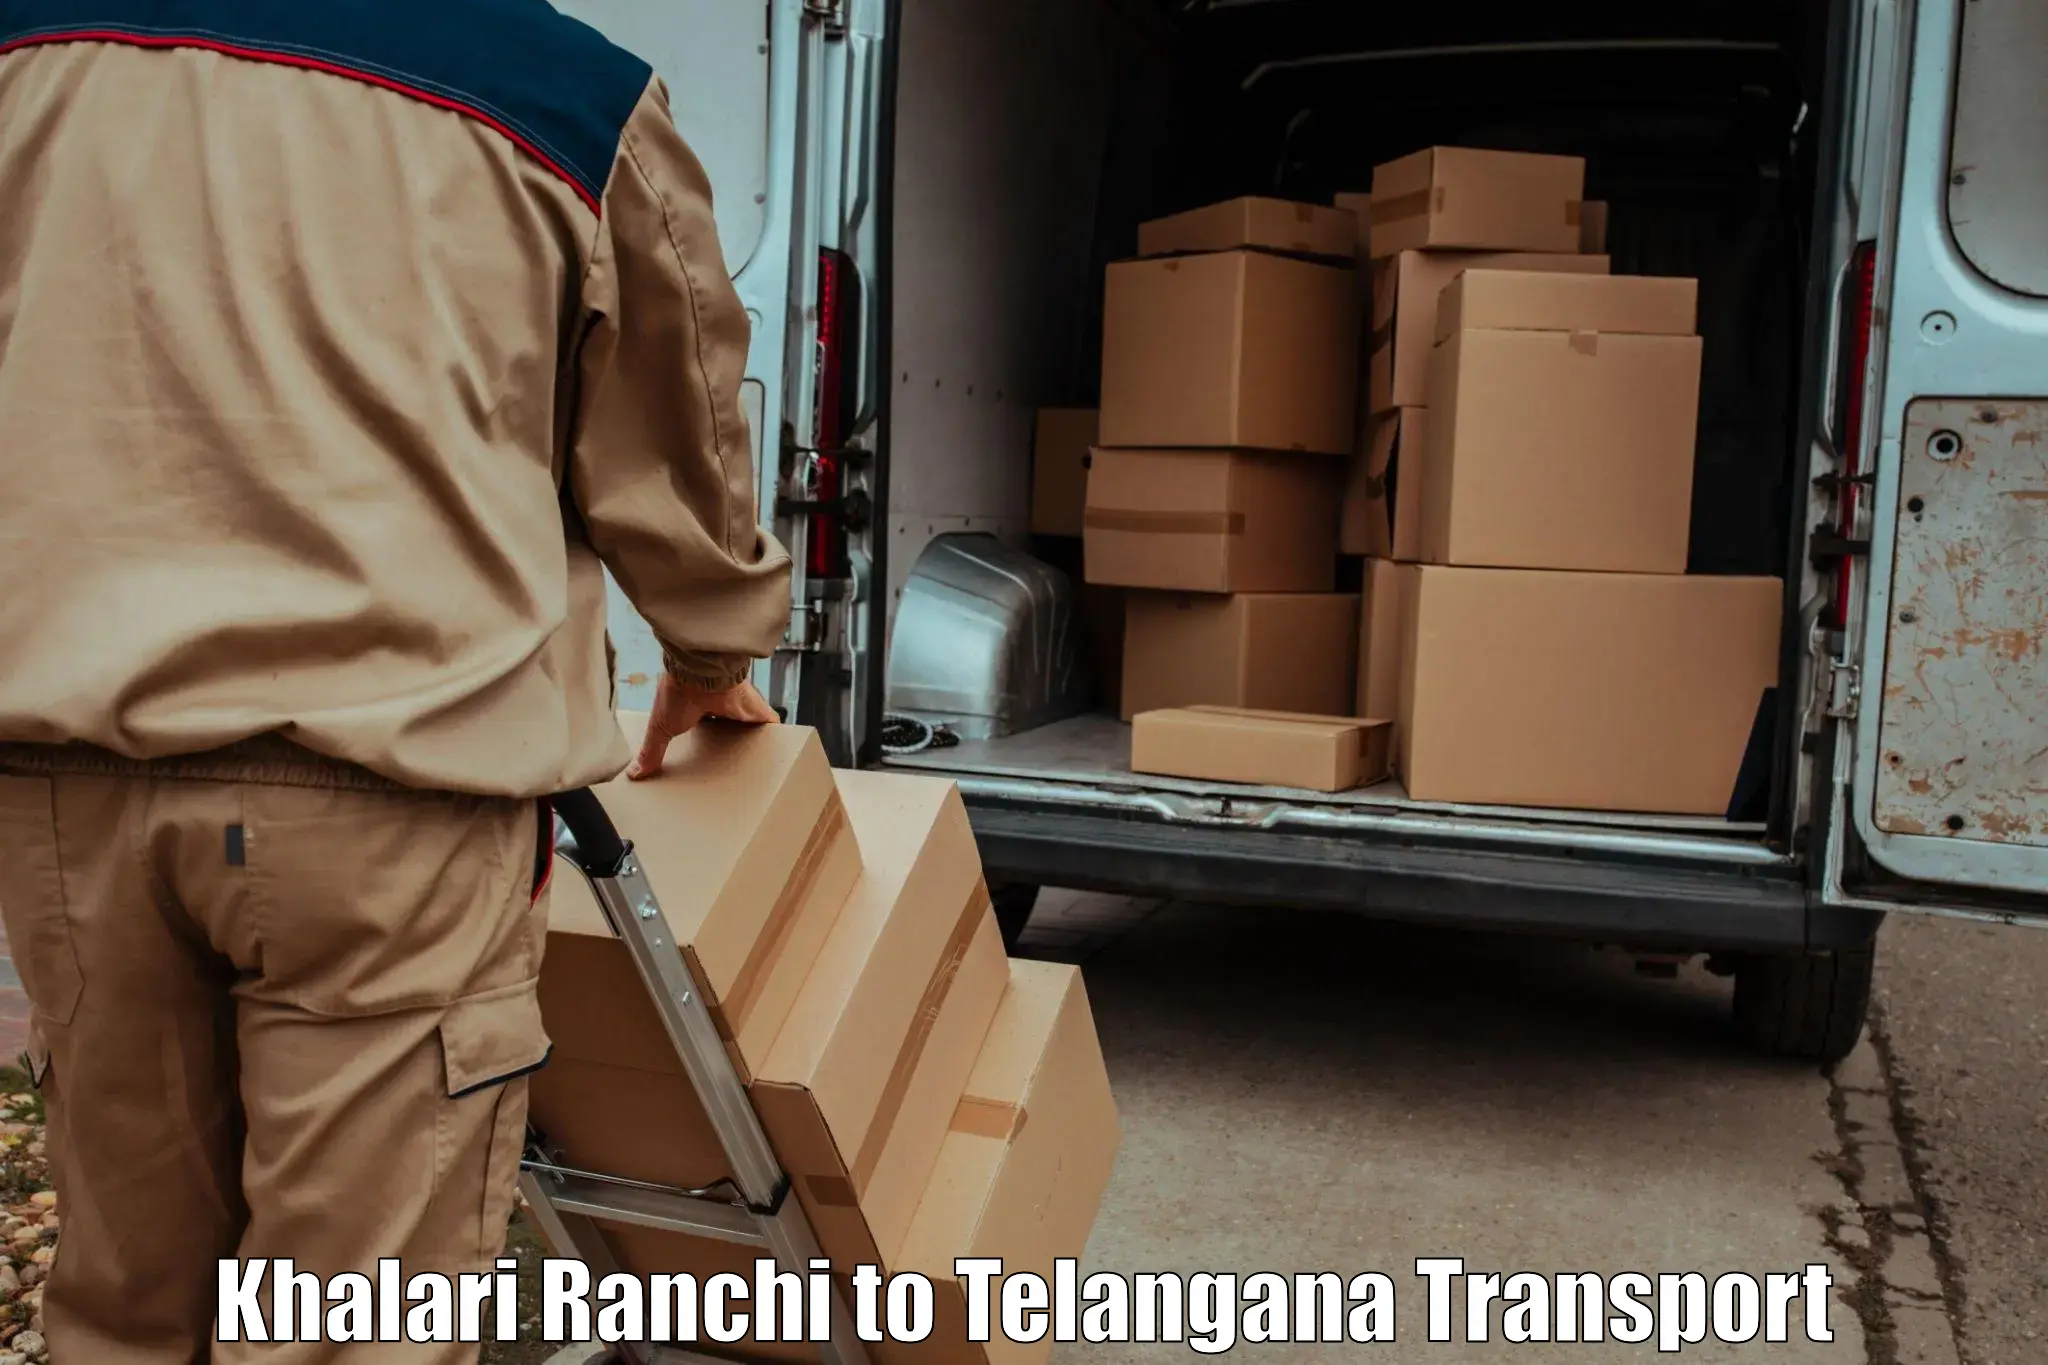 Delivery service Khalari Ranchi to Hyderabad